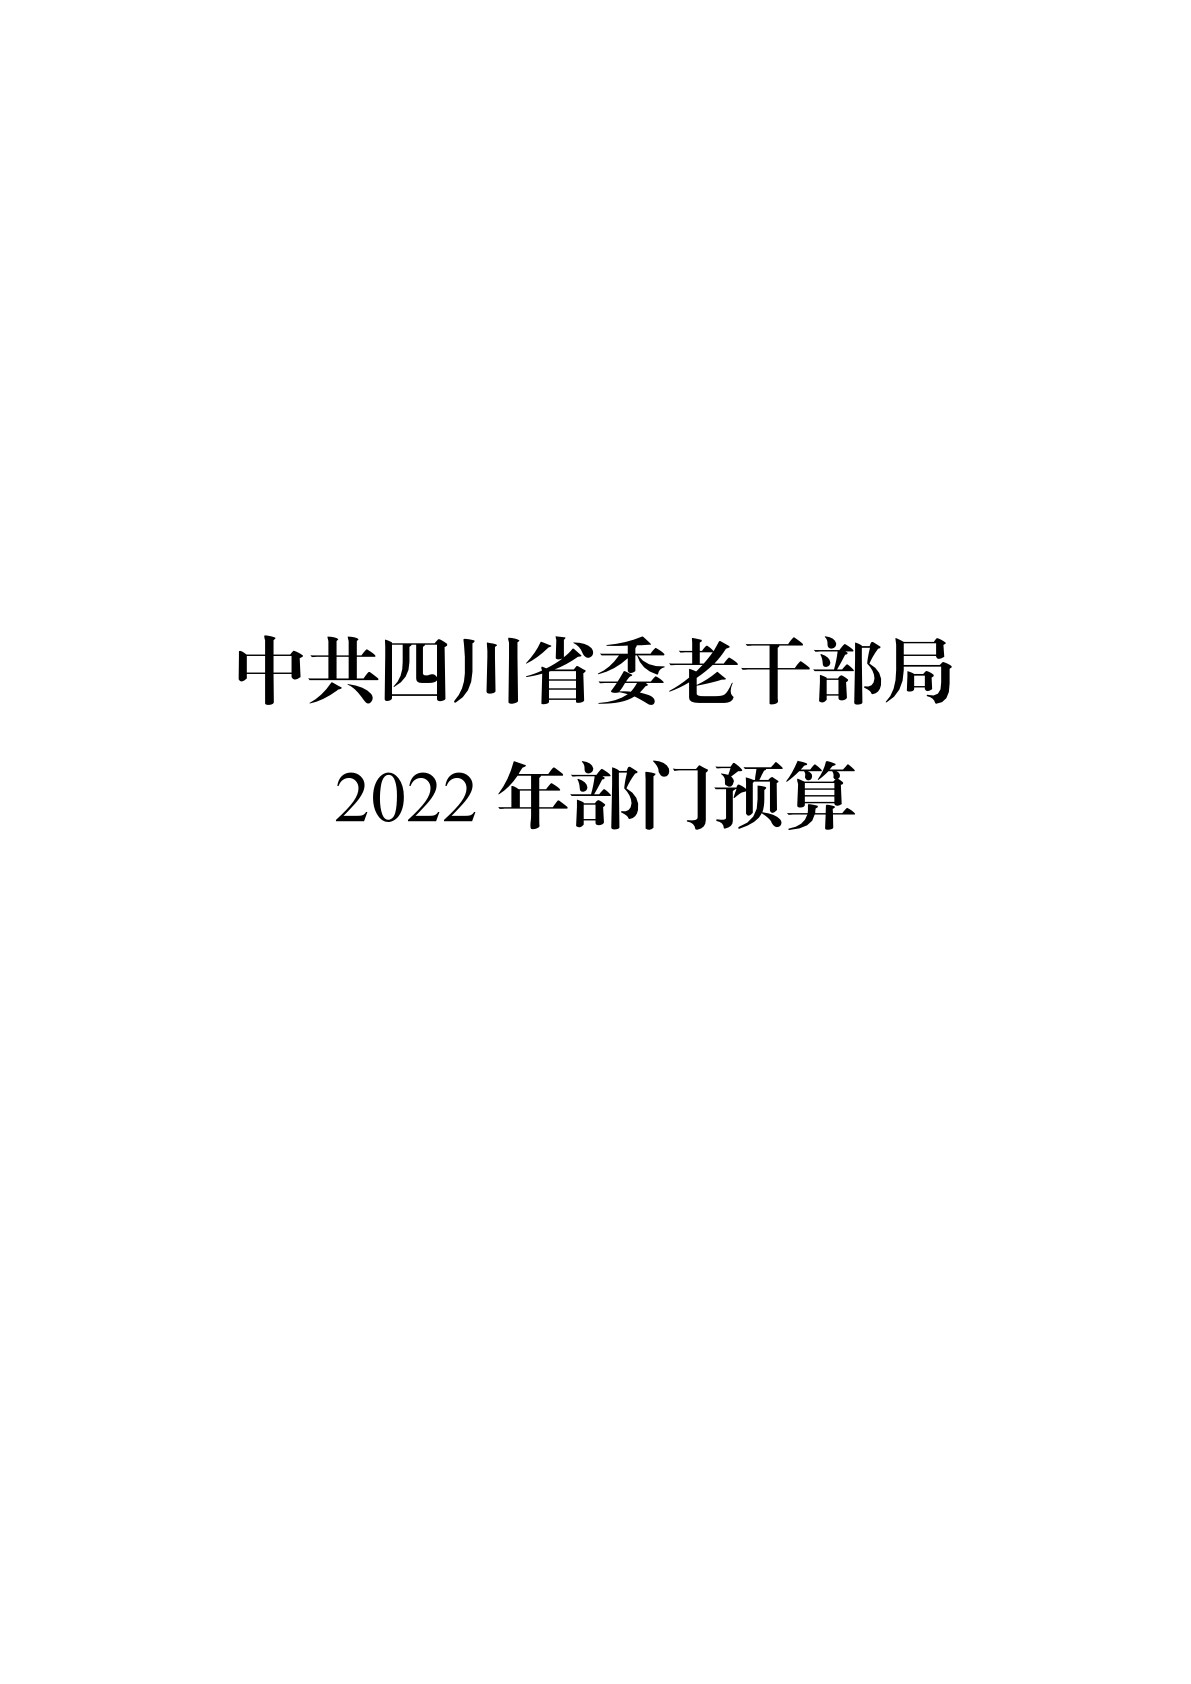 2022老干部局预算公开（20220315）_1.jpg